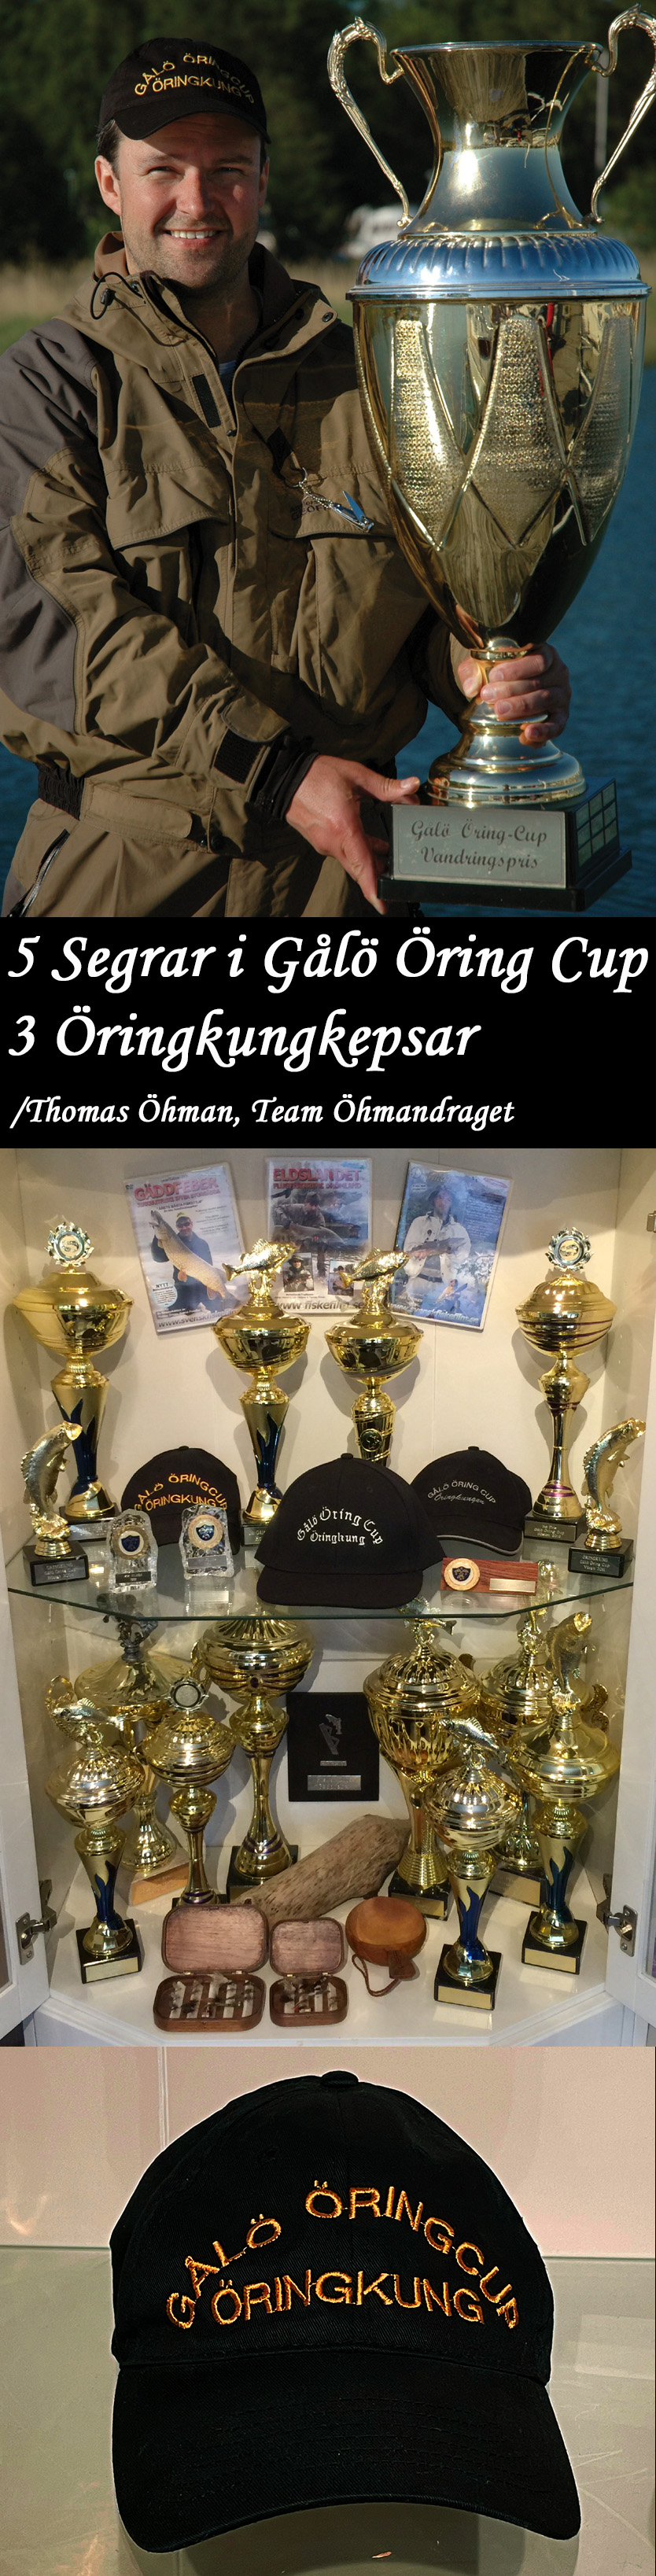 Thomas hman team hmandraget vinner fisketvlingar Gl ring Cup & Grinda Open